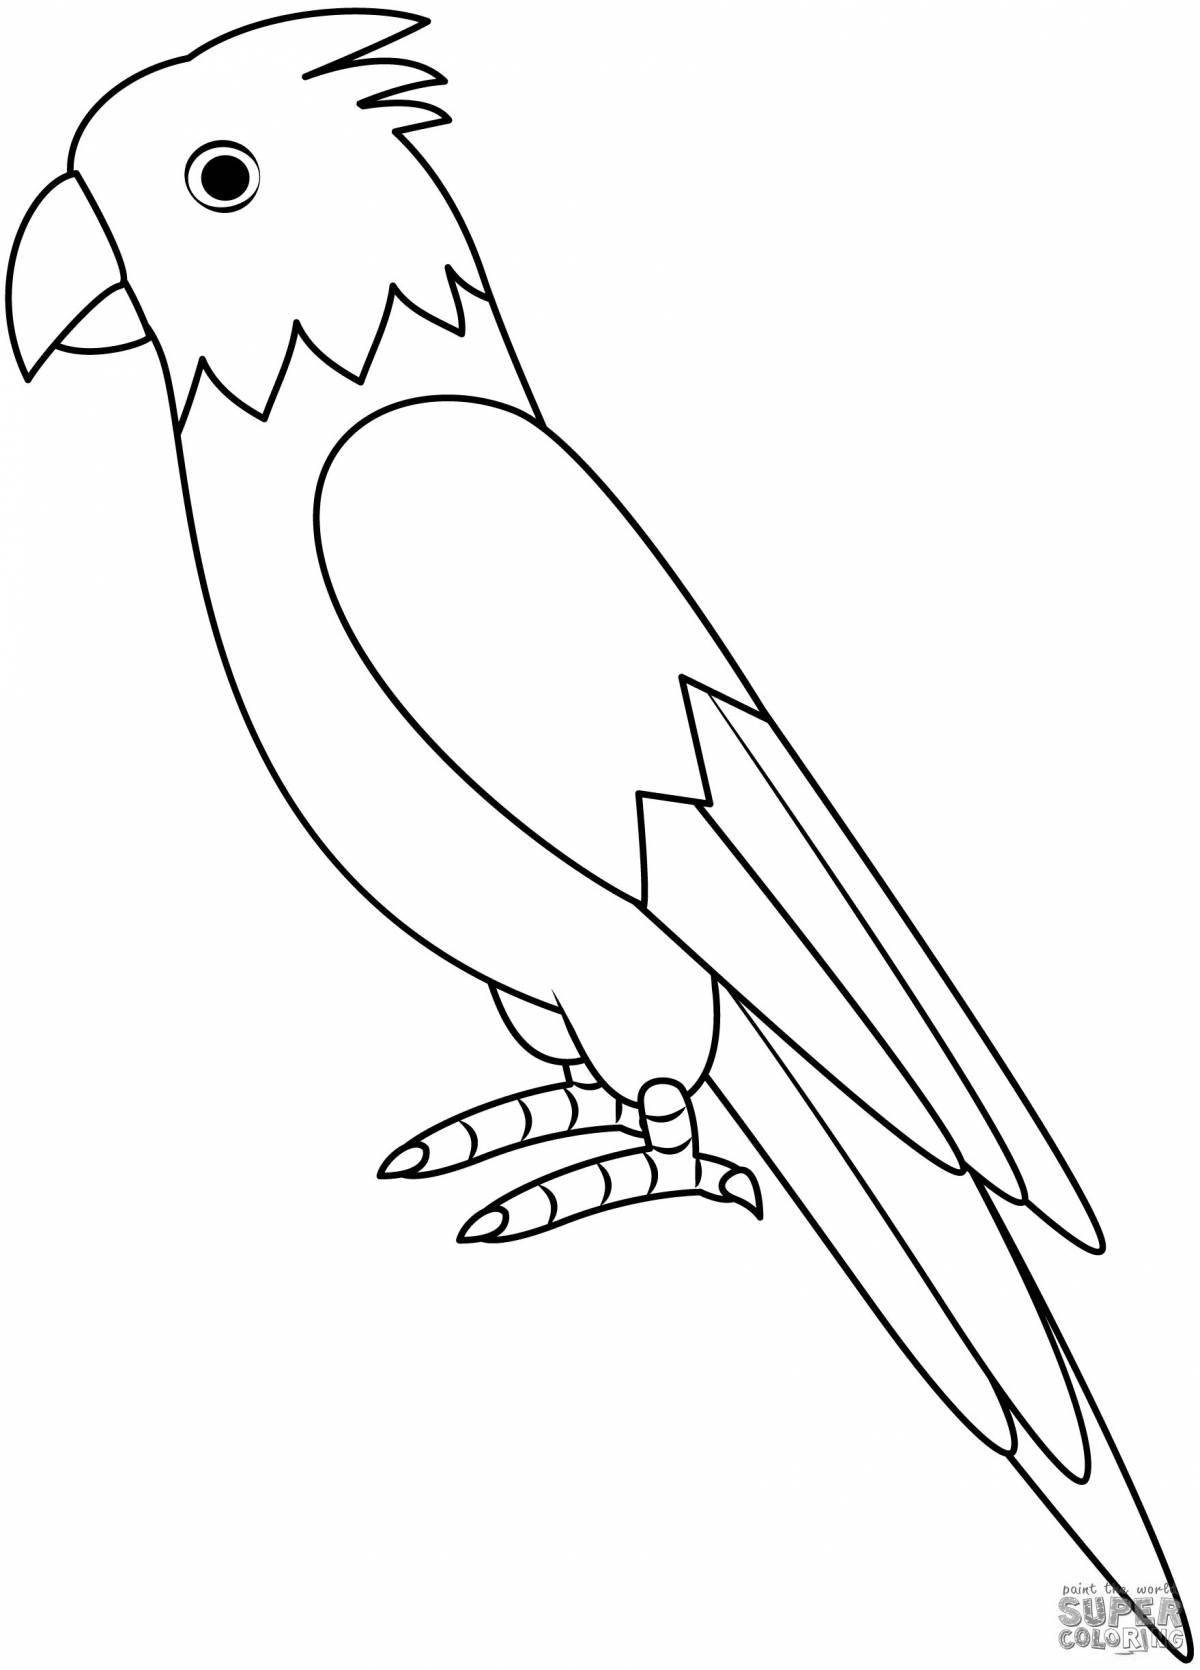 Раскраска лучистый попугай для детей 6-7 лет